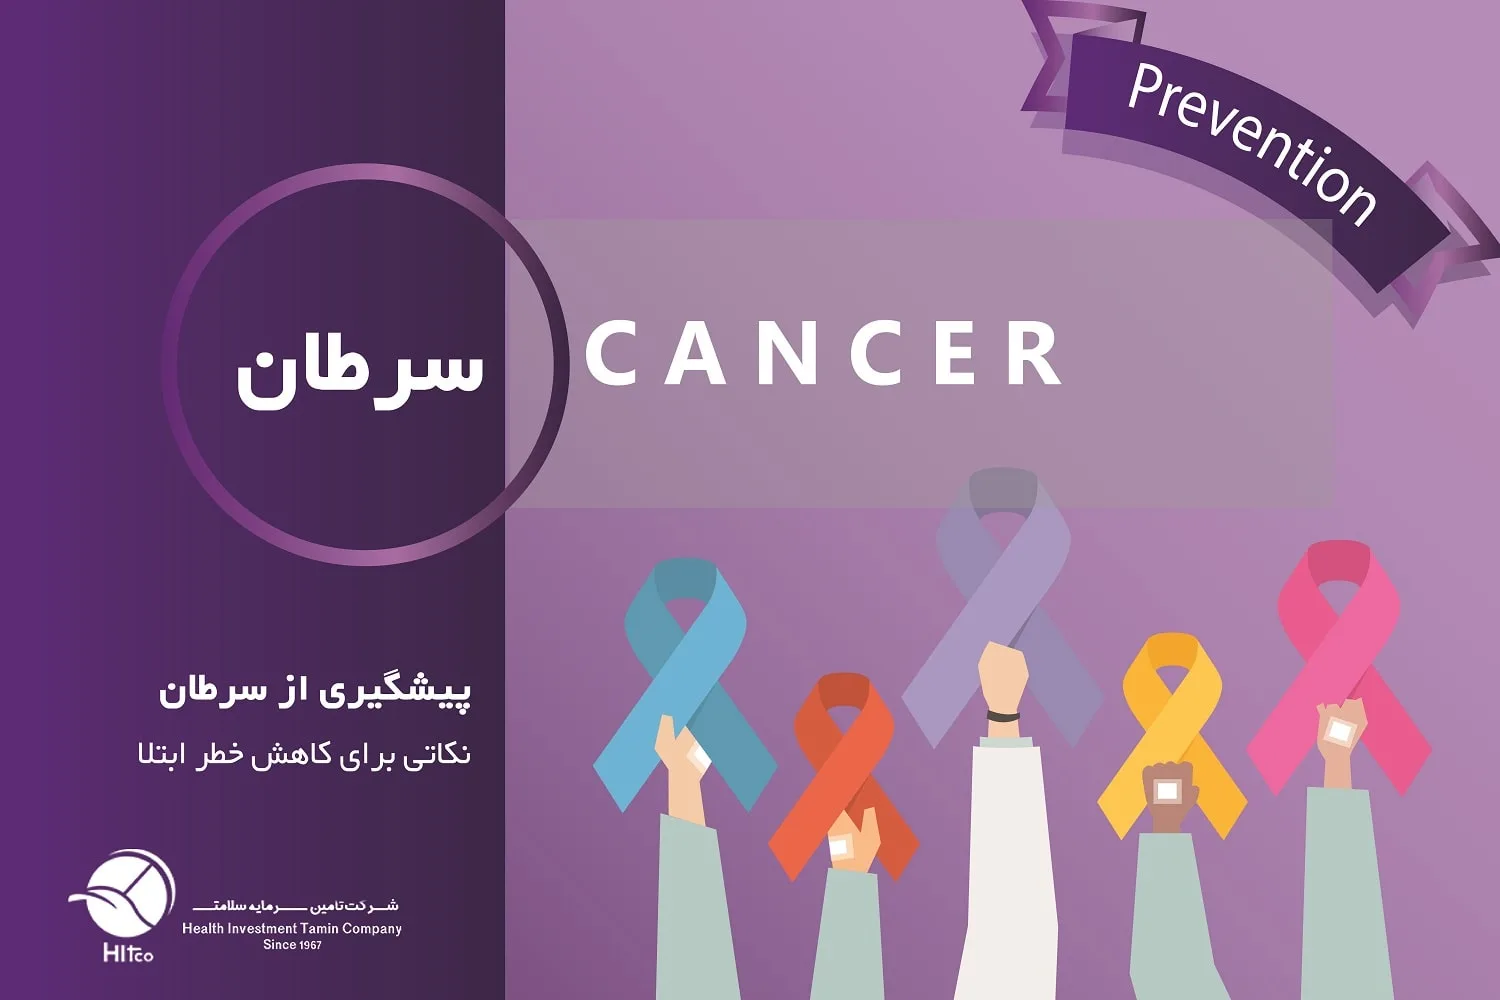 پیشگیری از سرطان: 7 نکته برای کاهش خطر ابتلا به سرطان